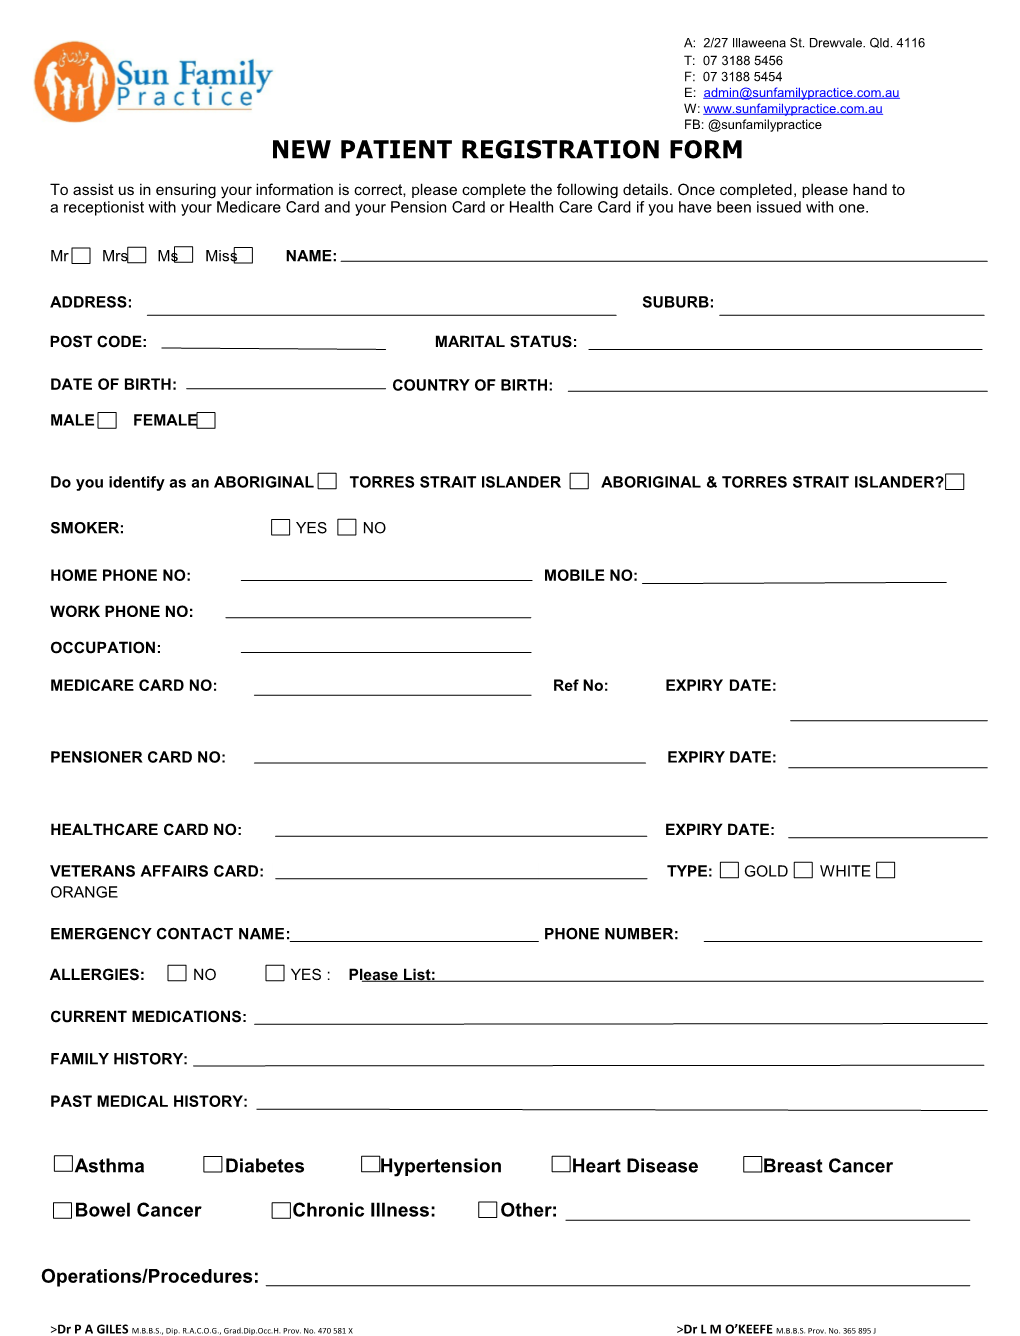 New Patient Registration Form s1